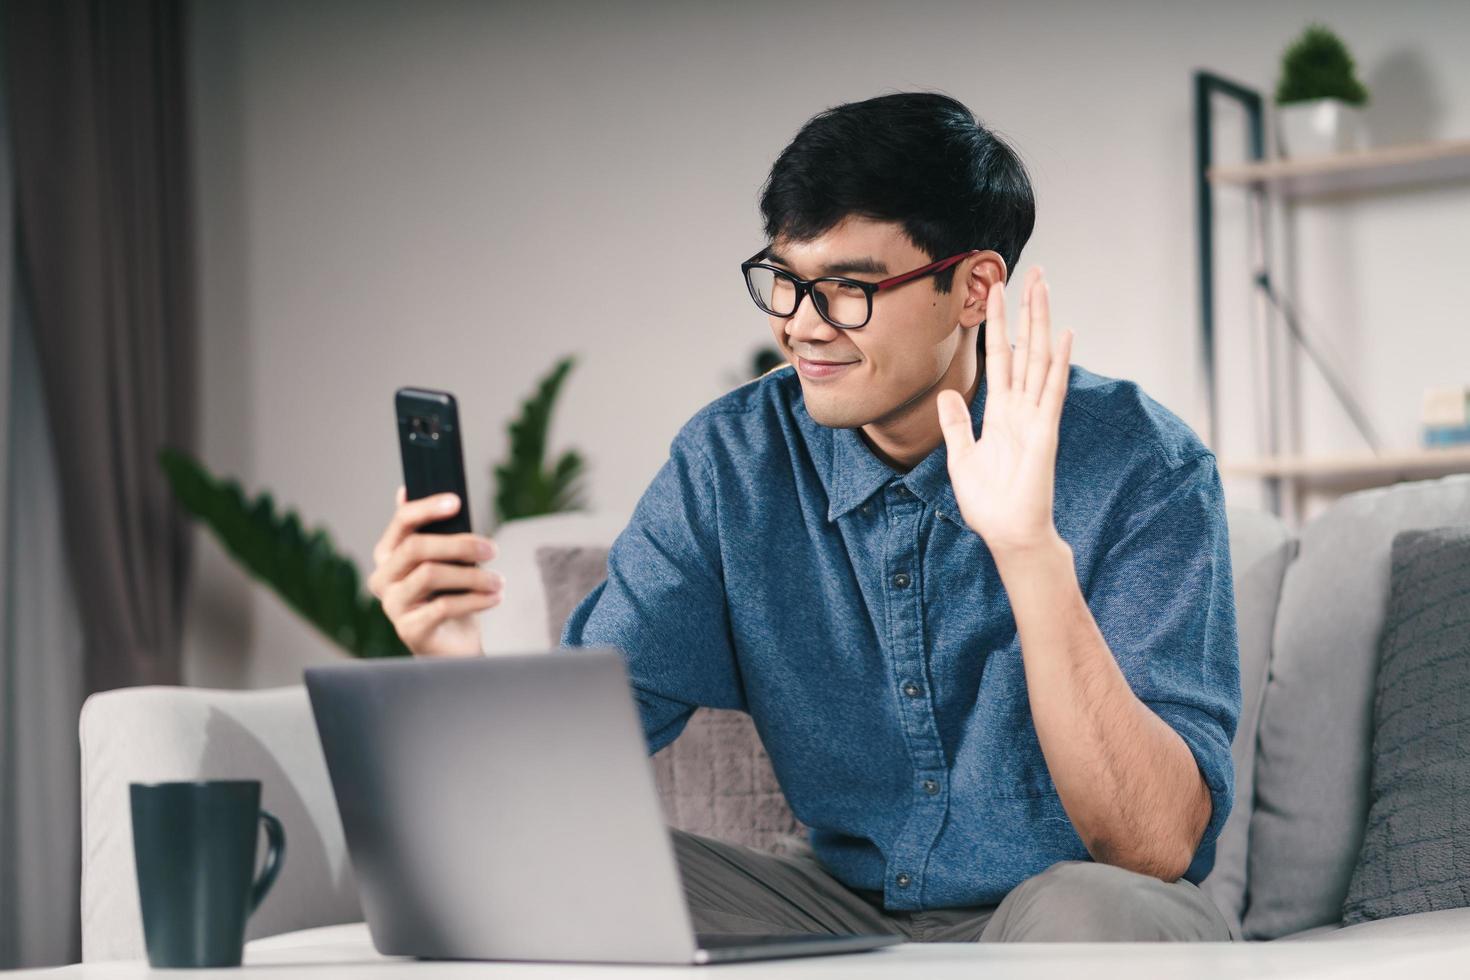 junger asiatischer mann, der smartphone für online-videokonferenzanrufe verwendet, winkt mit der hand und macht nachts hallo-geste auf der couch im wohnzimmer. foto